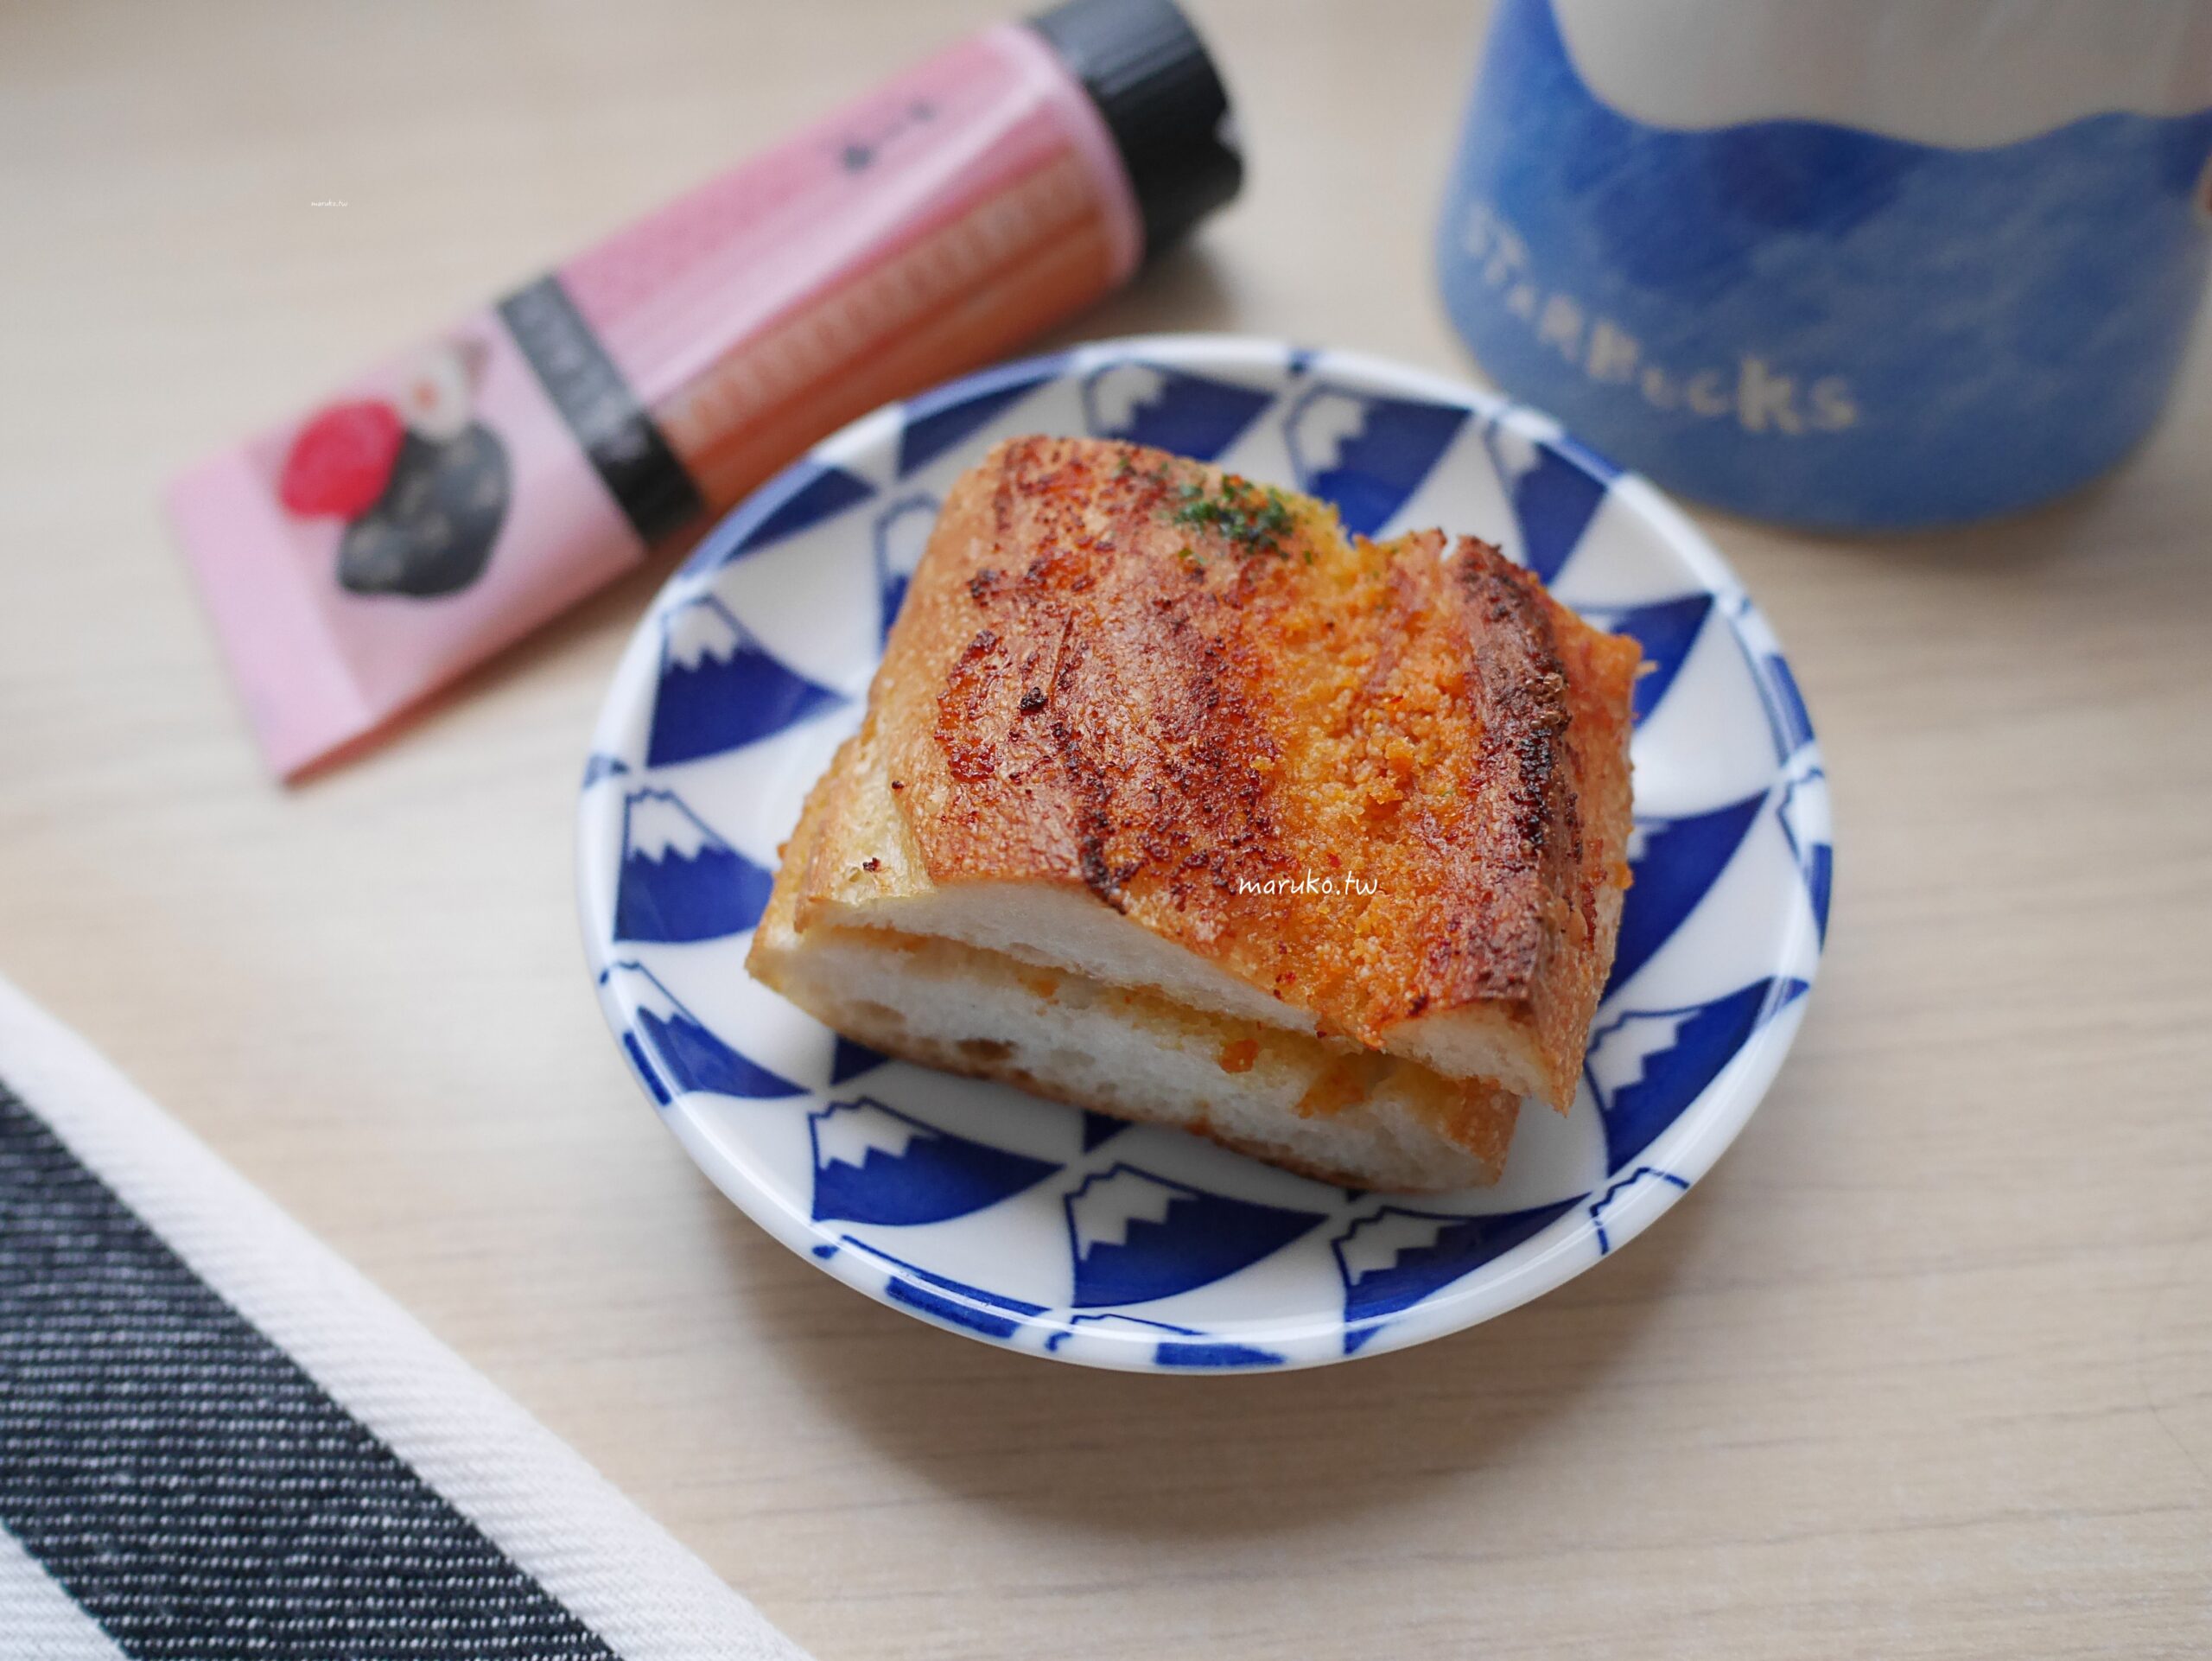 【食譜】明太子法國麵包 二樣食材就能做日本麵包店最受歡迎的西式麵包！